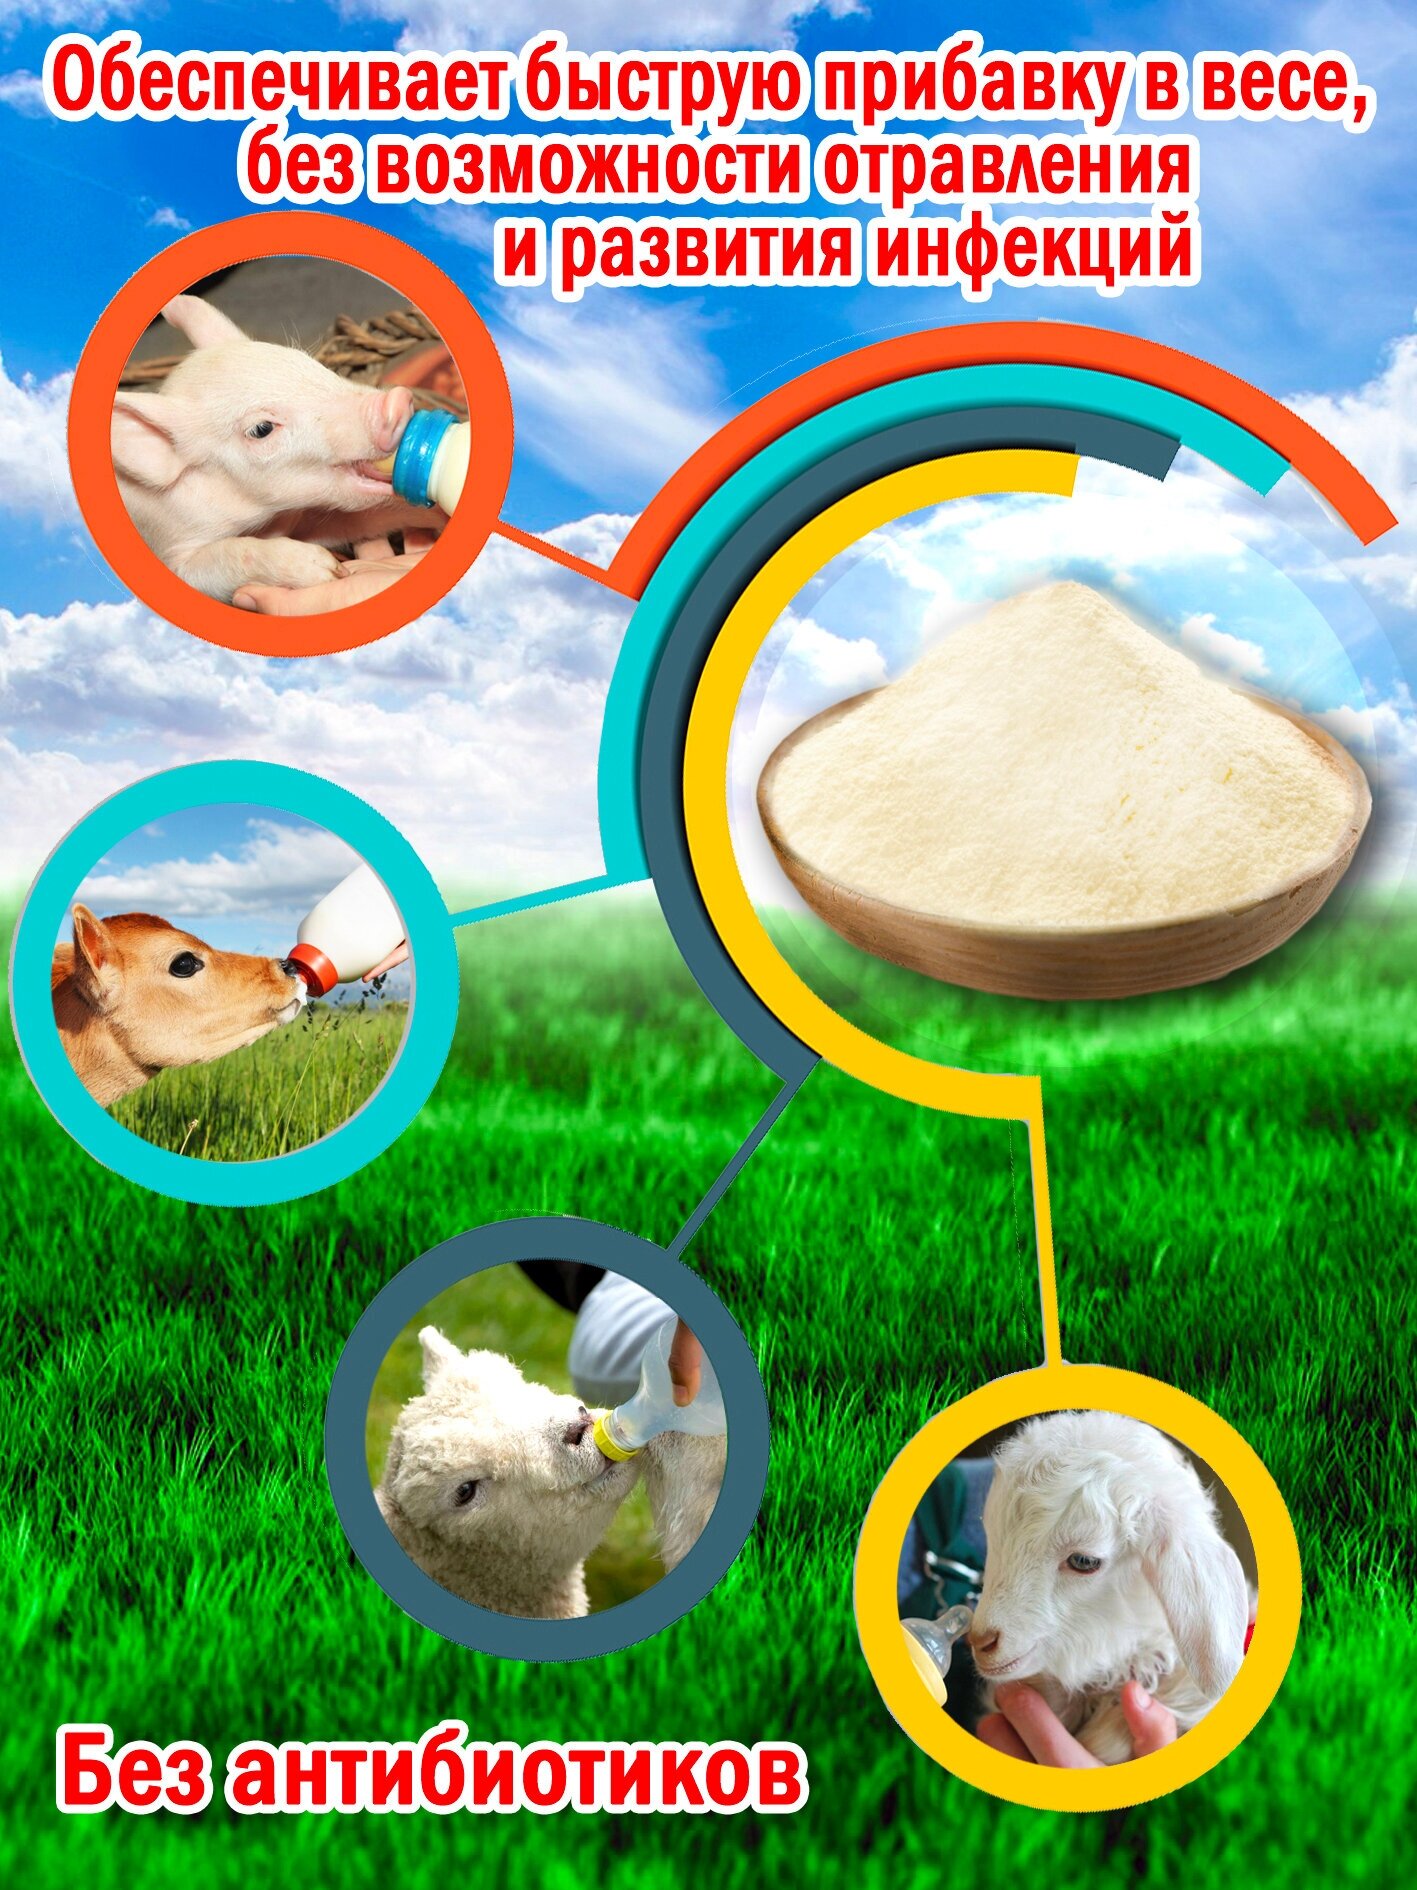 Заменитель цельного молока 12% со Льном пакет 5 кг. (5000гр.) производство Беларусь для животных